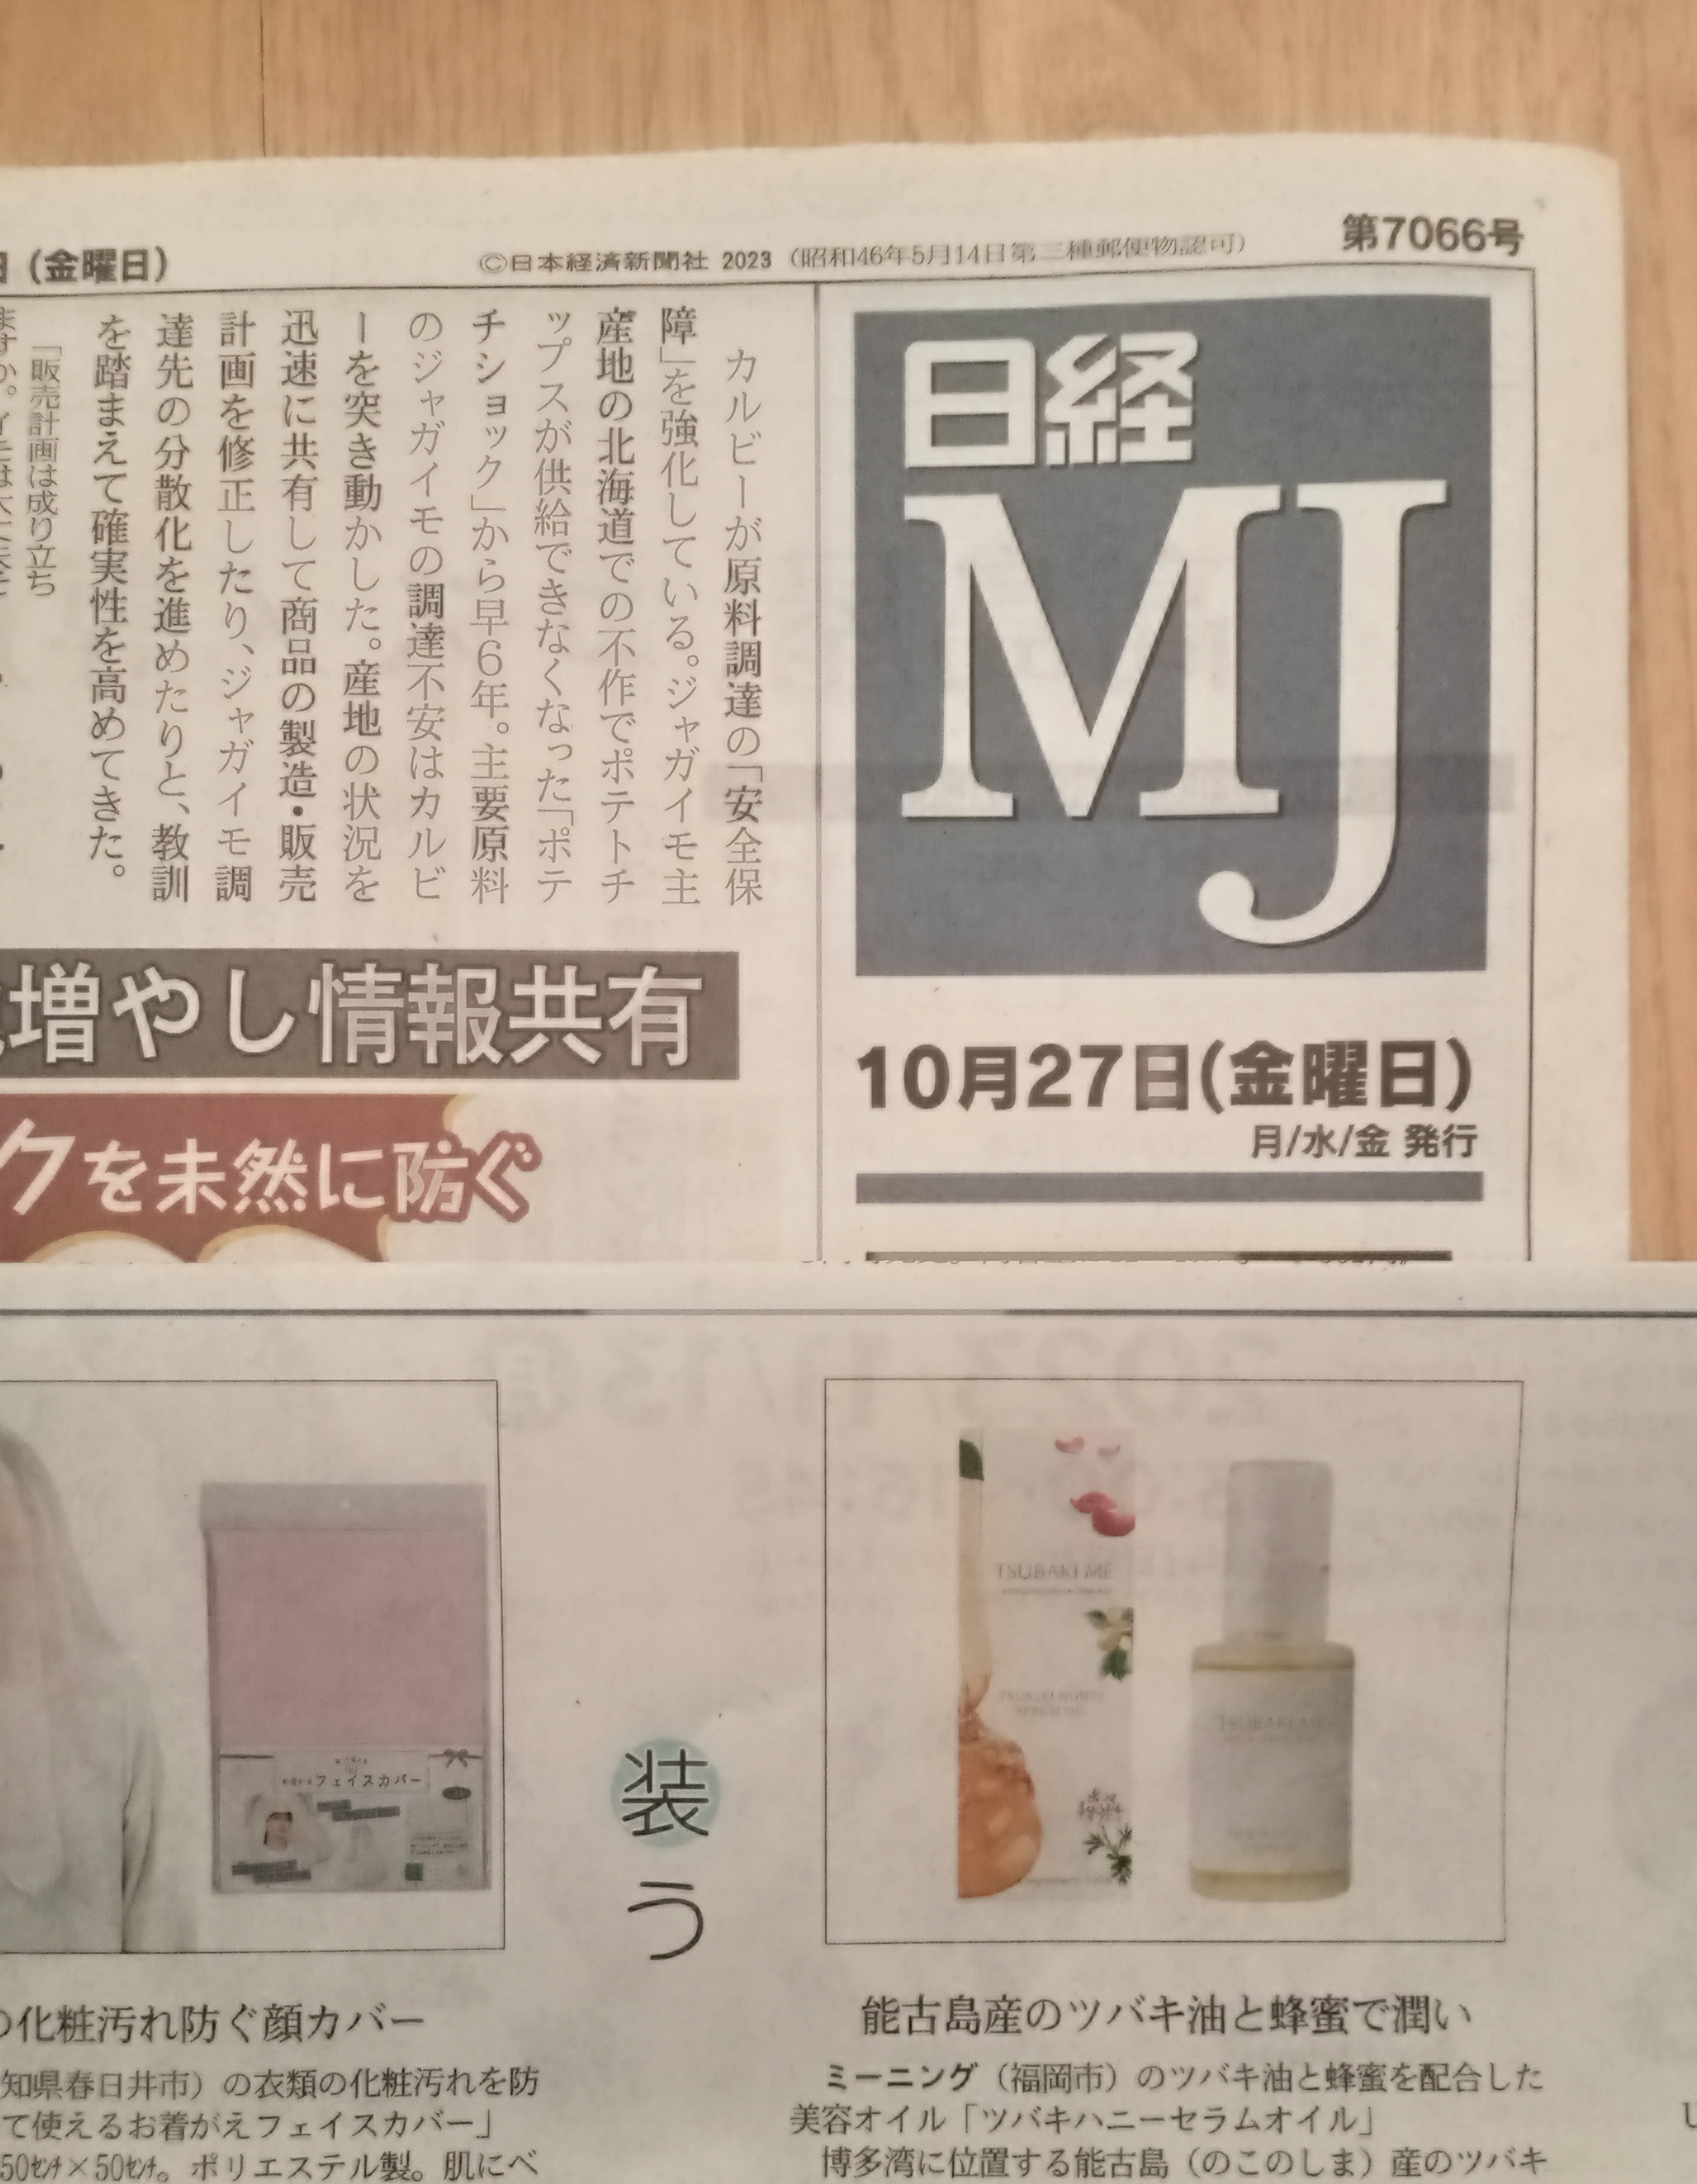 【メディア】2023.10.27『日経MJ新聞』にツバキミーが掲載されました。